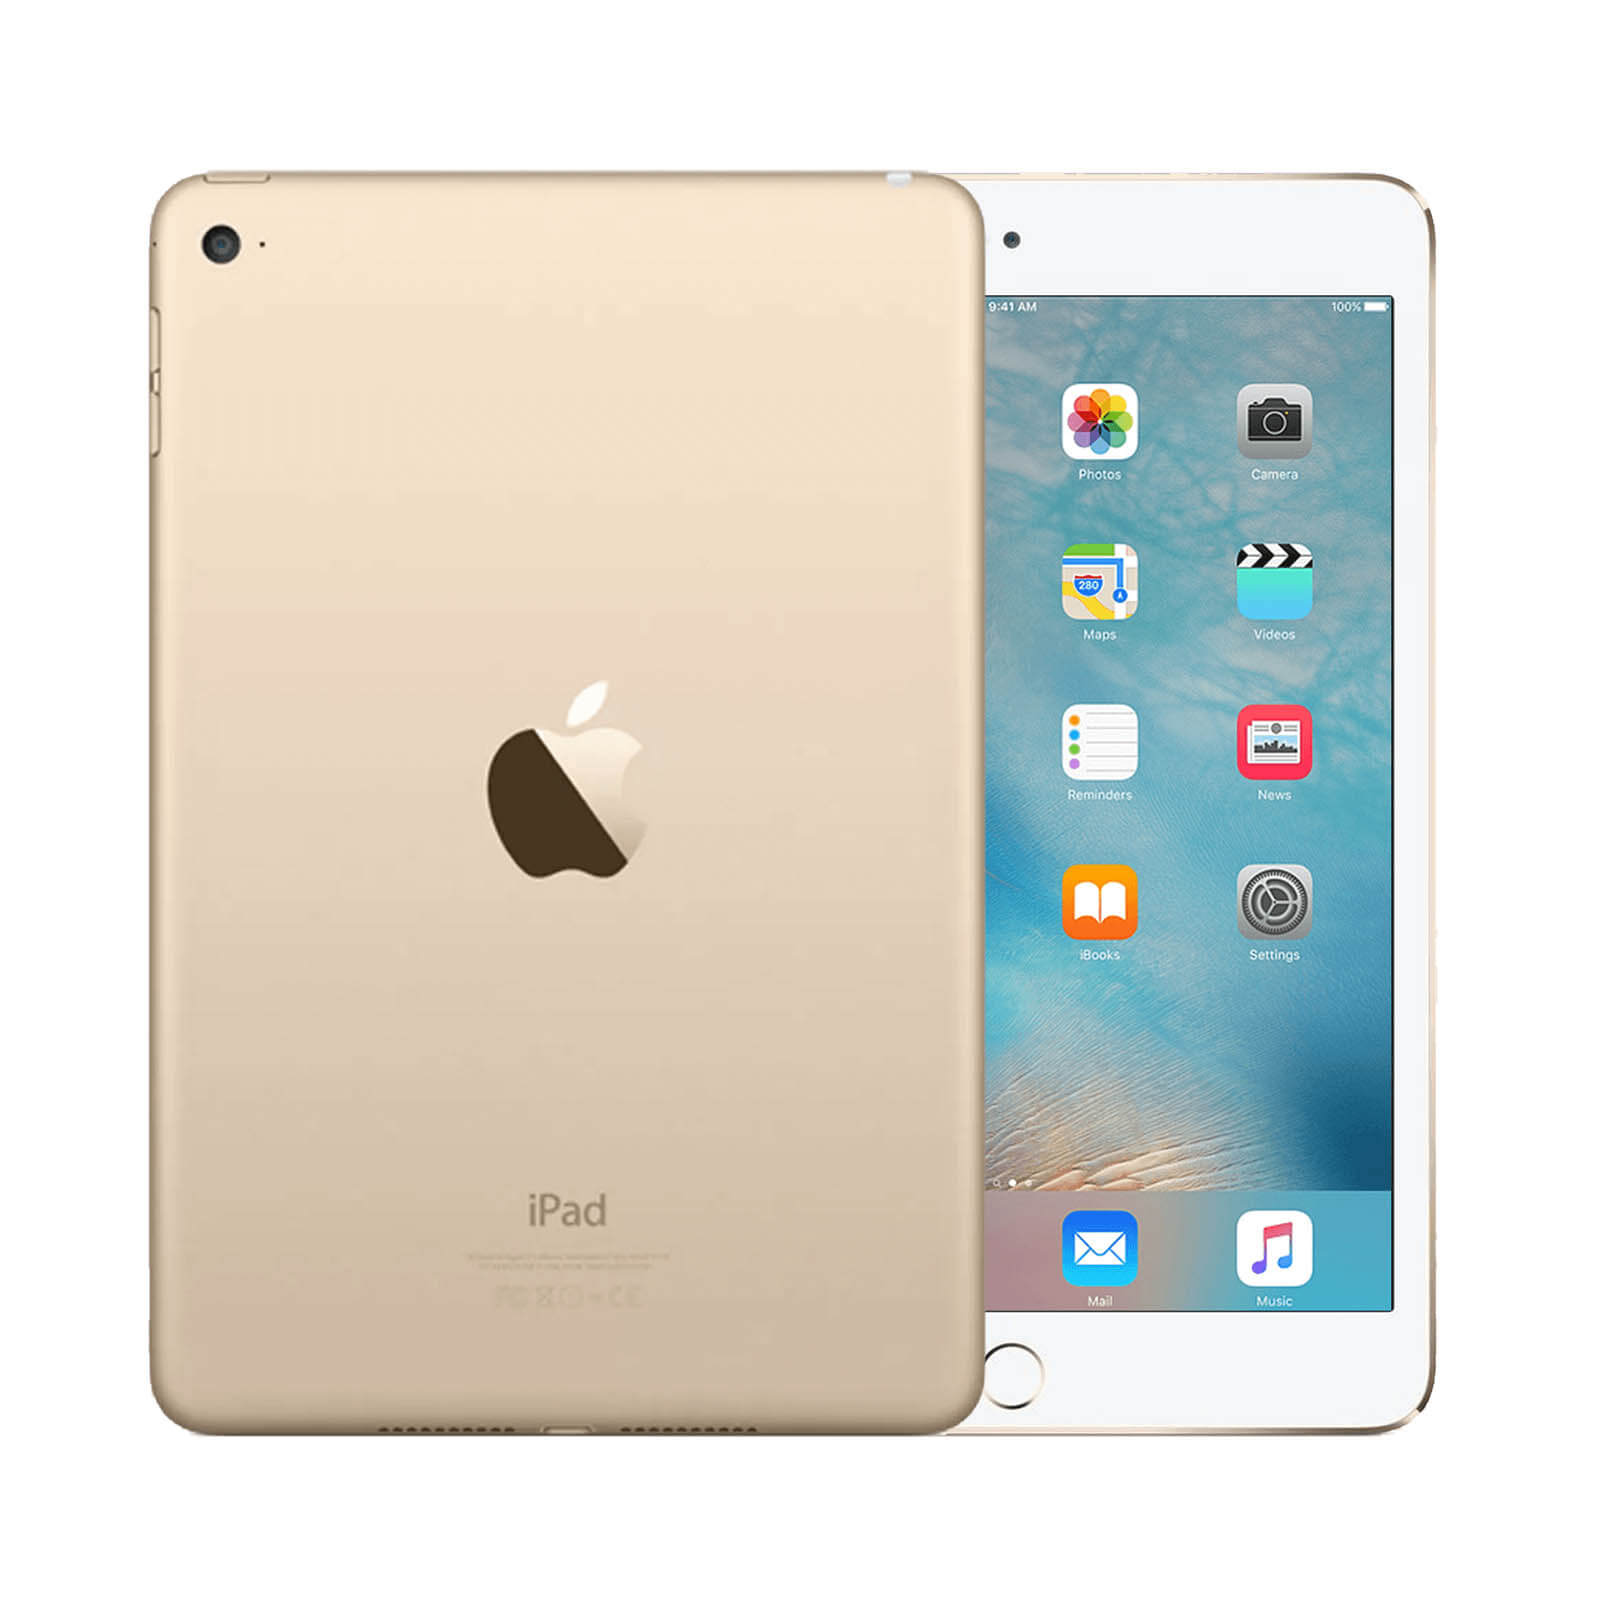 Apple iPad Mini 4 128GB Gold WiFi - Very Good 128GB Gold Very Good